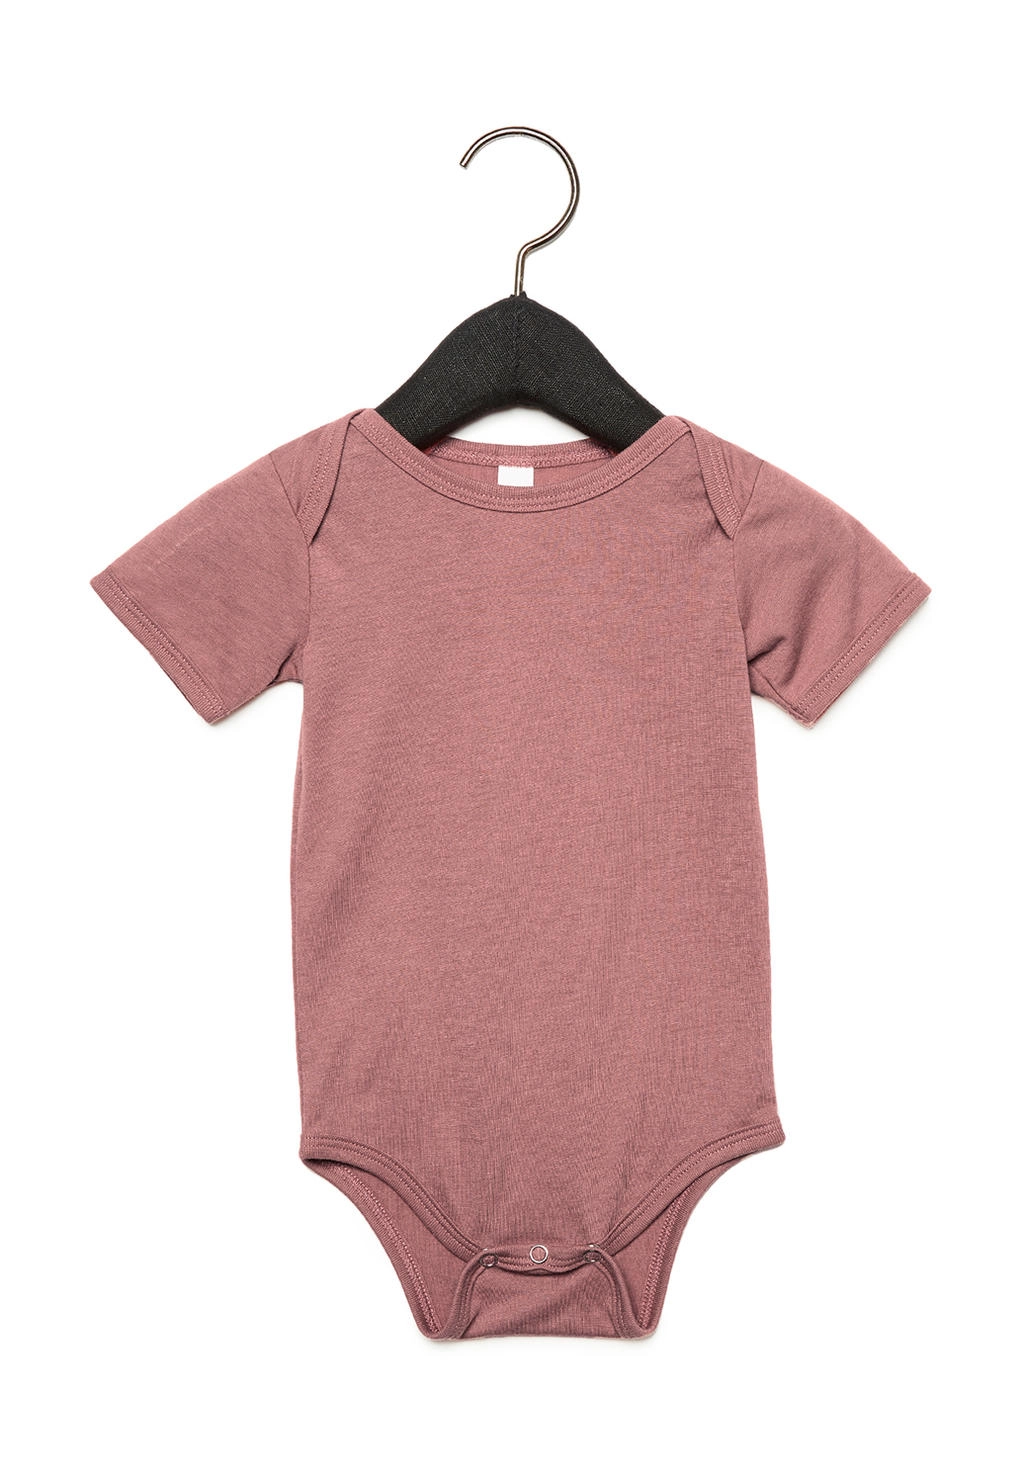 Baby Triblend Short Sleeve Onesie zum Besticken und Bedrucken in der Farbe Mauve Triblend mit Ihren Logo, Schriftzug oder Motiv.